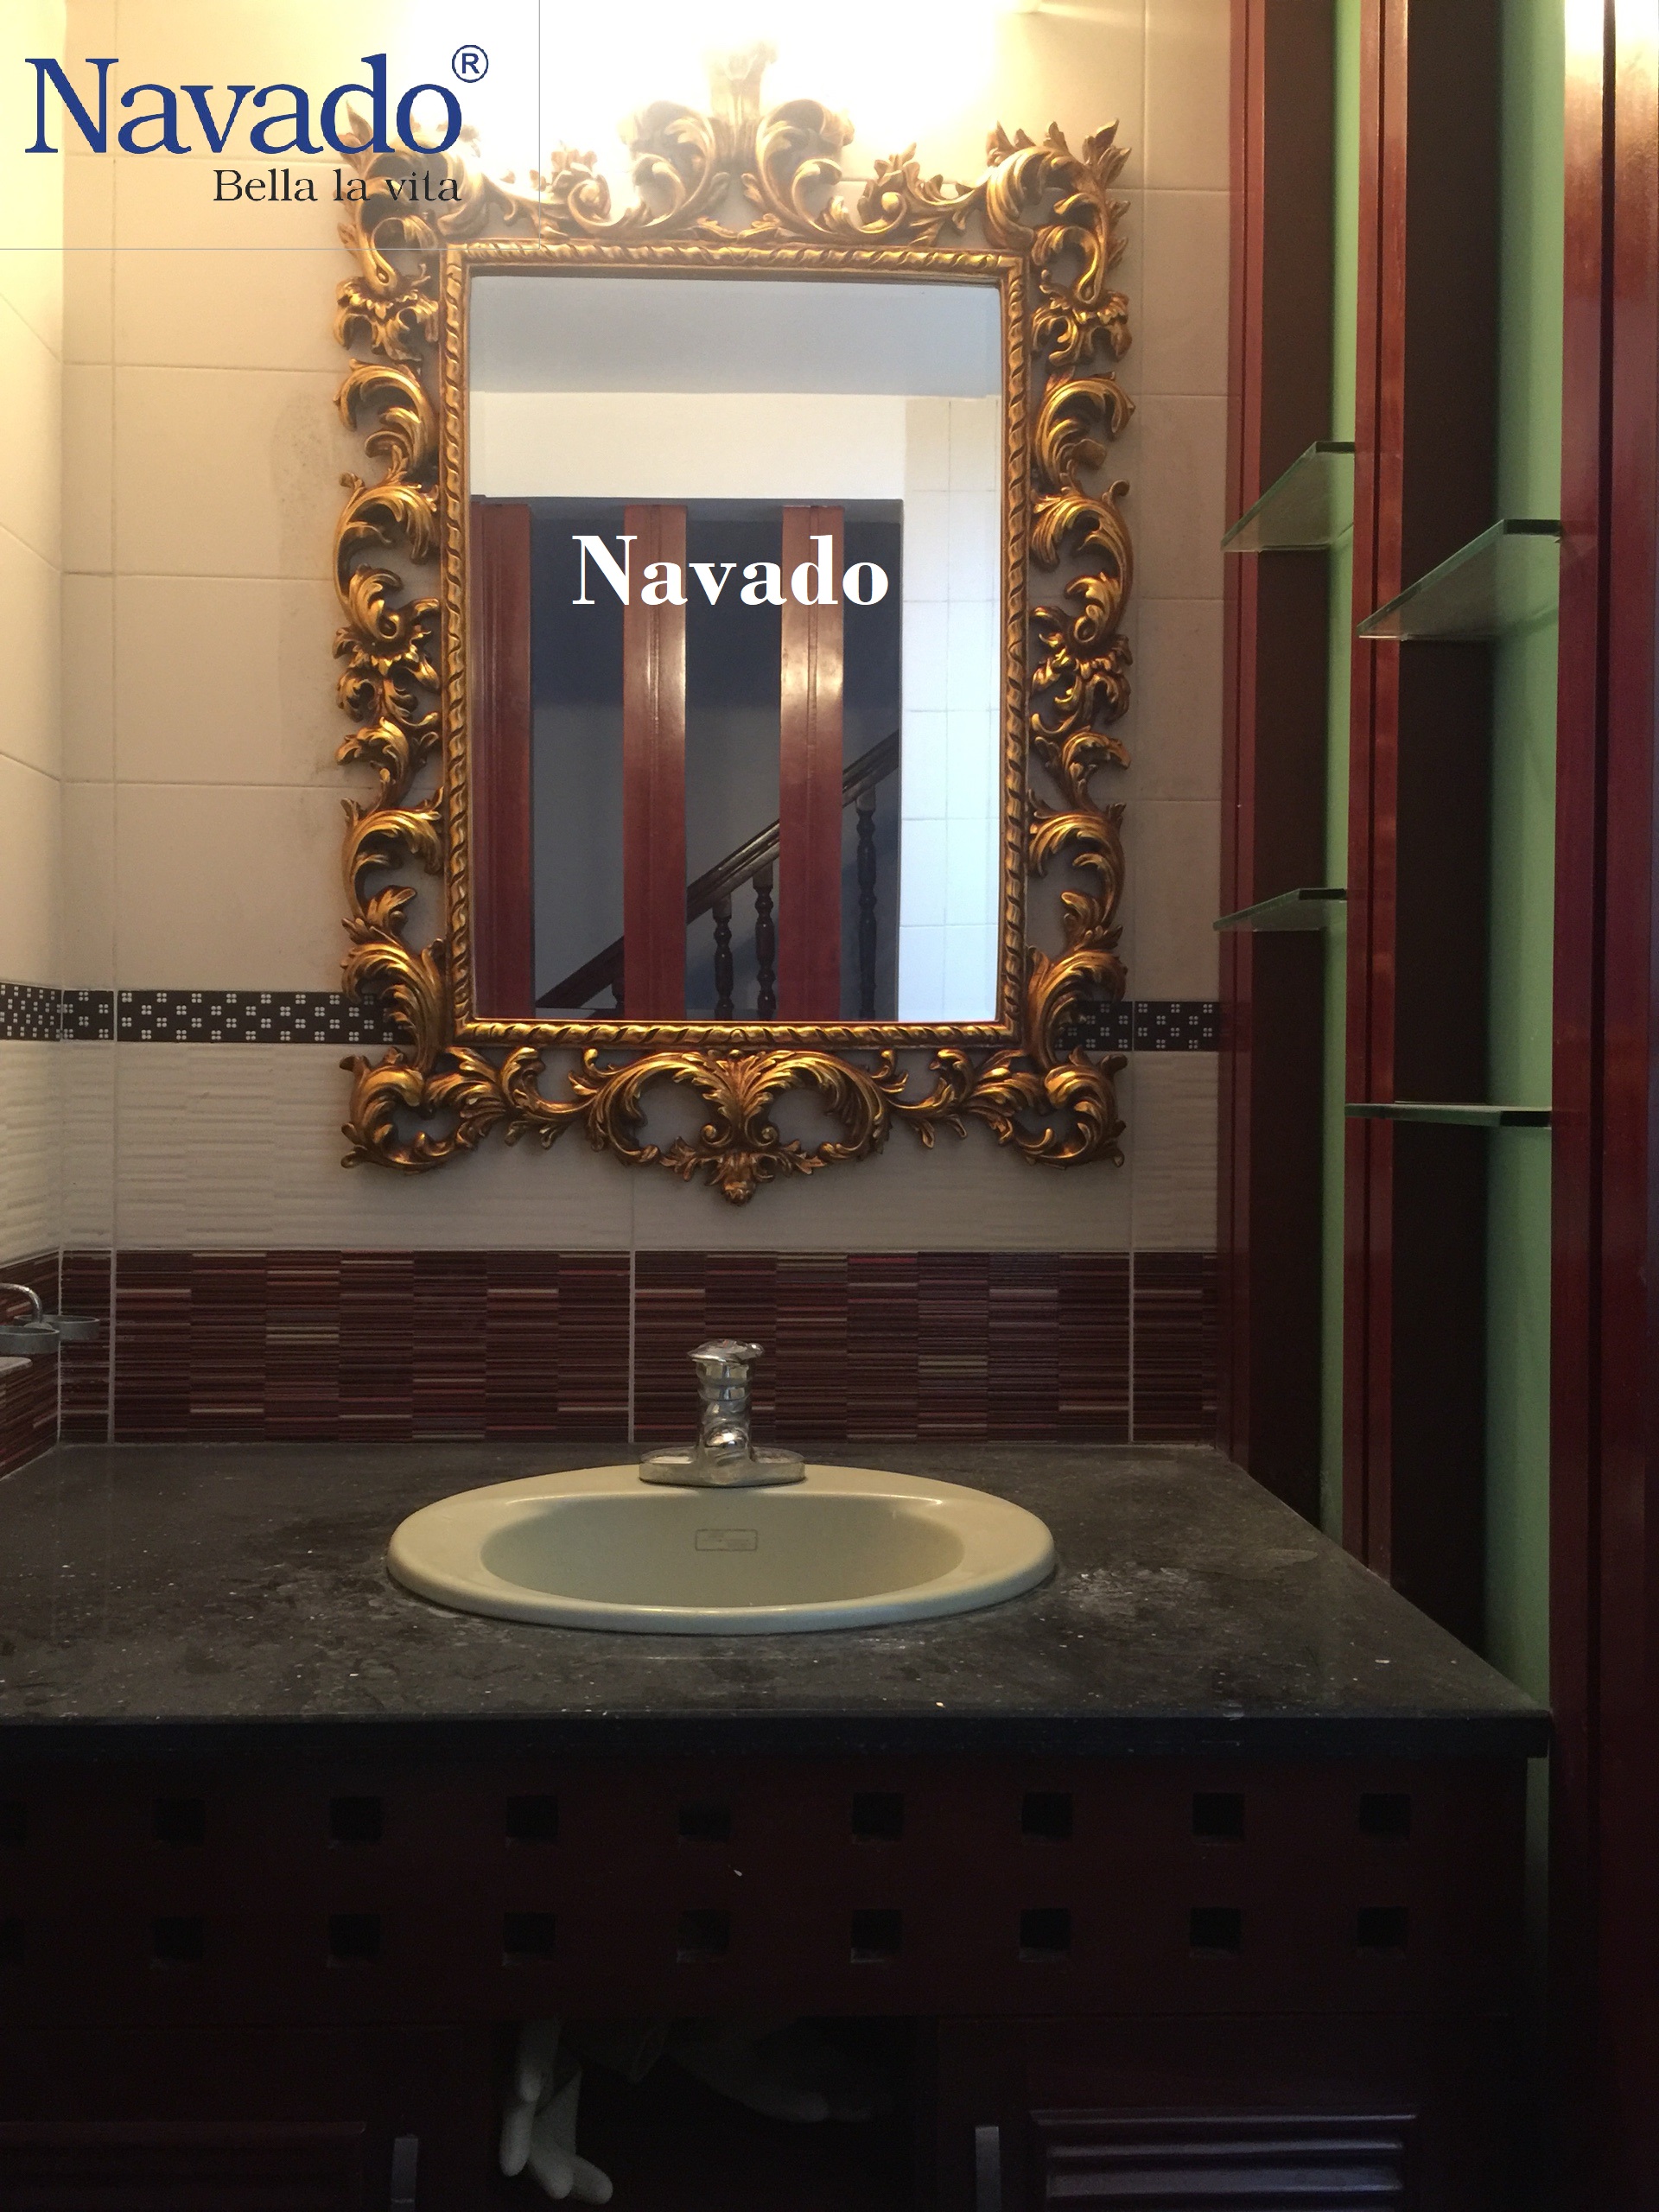 Gương bỉ trang trí cho phòng tắm